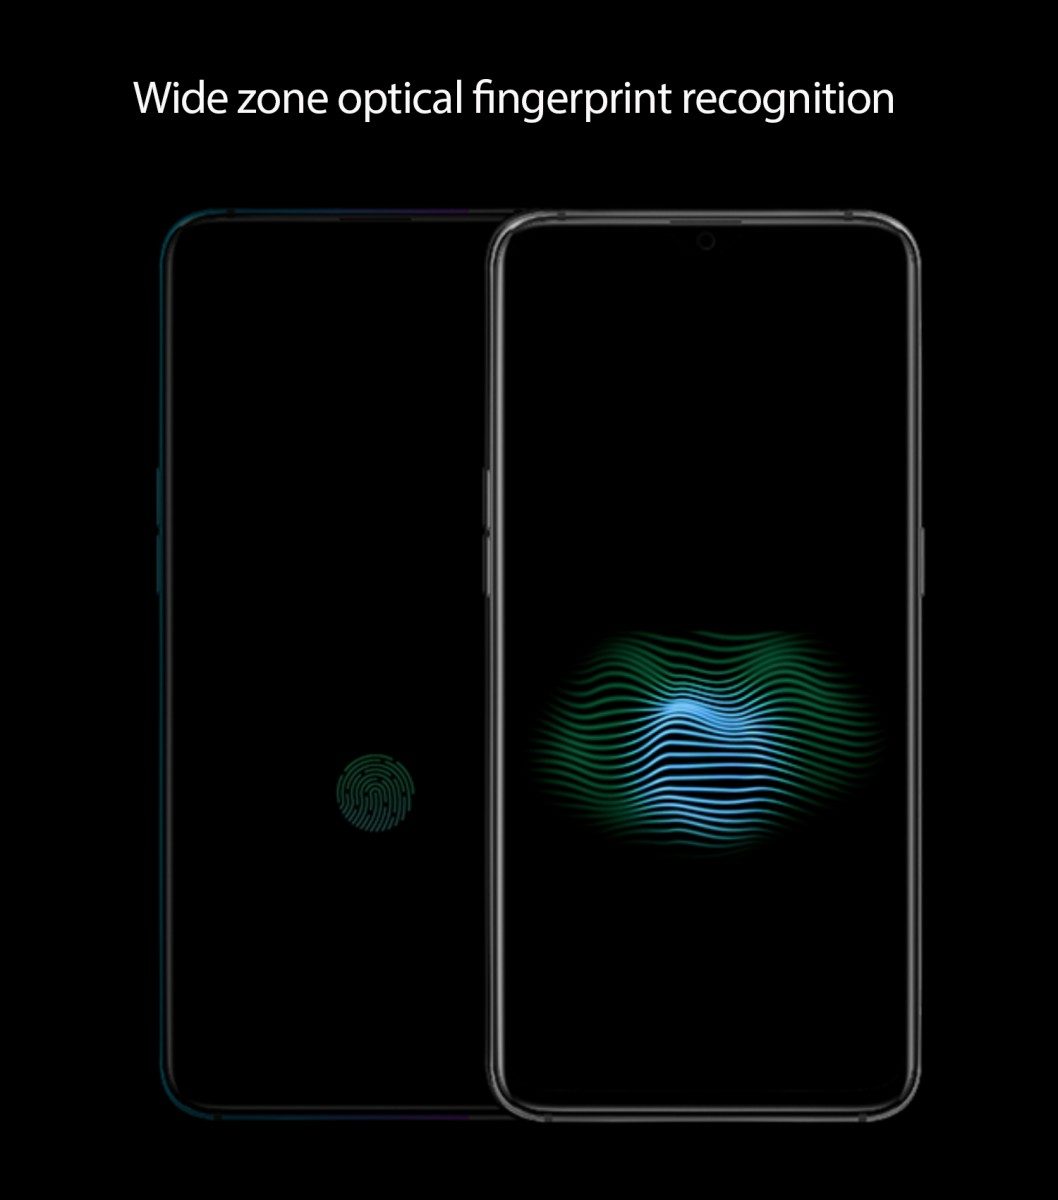 wide zone fingerprint scan